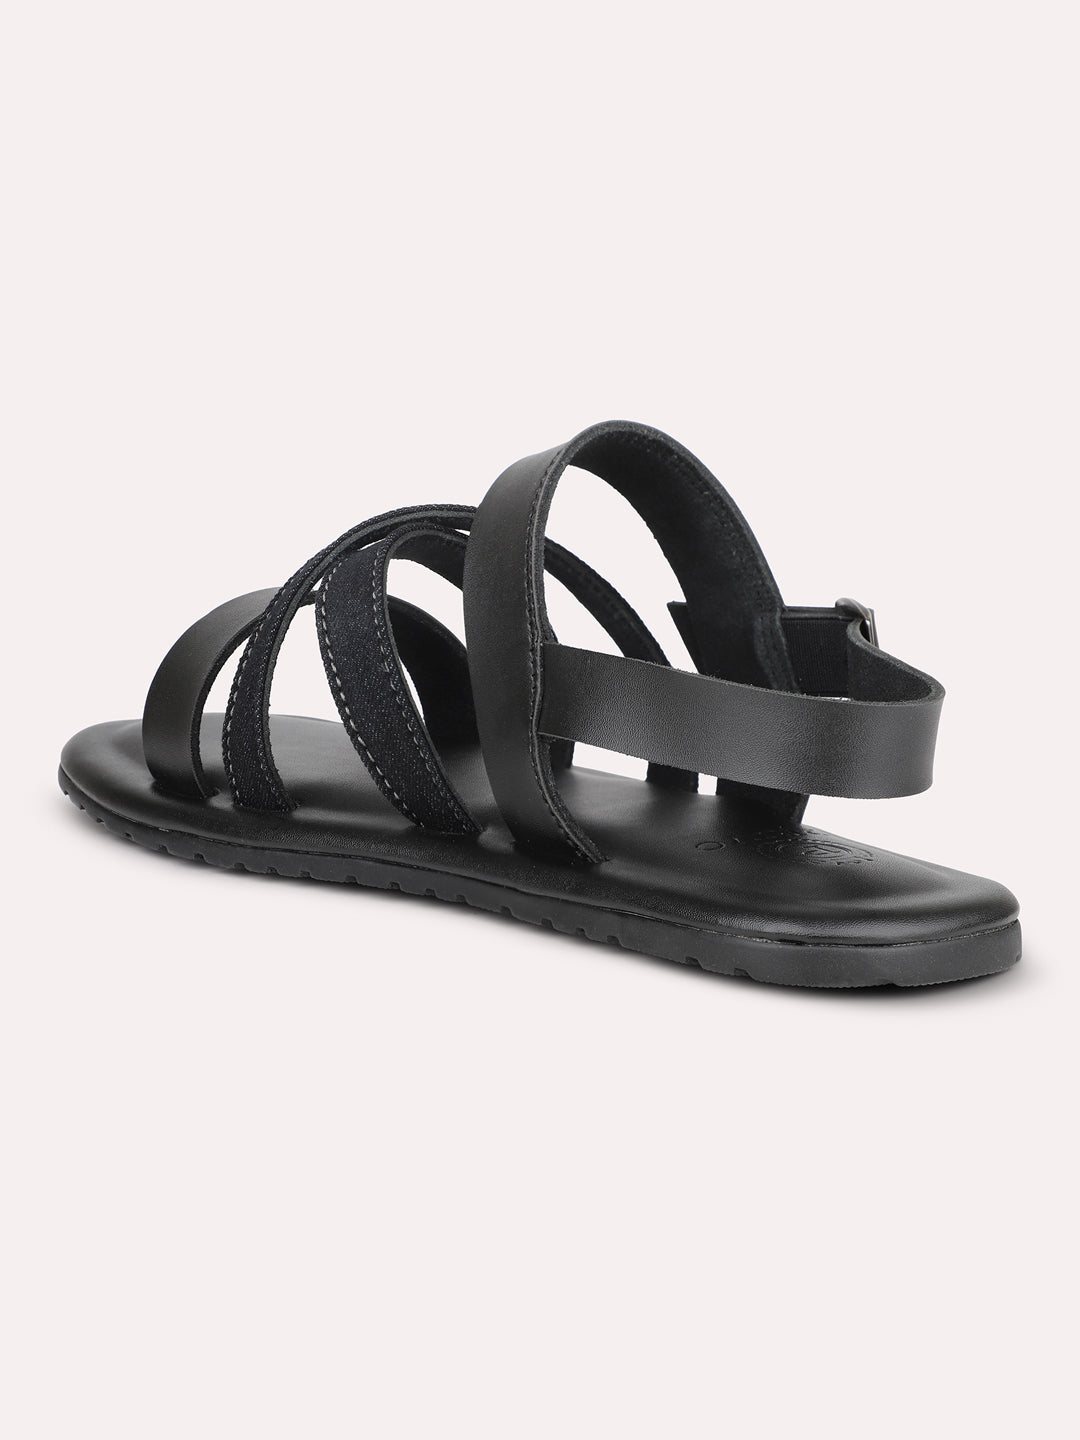 Privo Denim and Black Striped Casual Sandal For Men